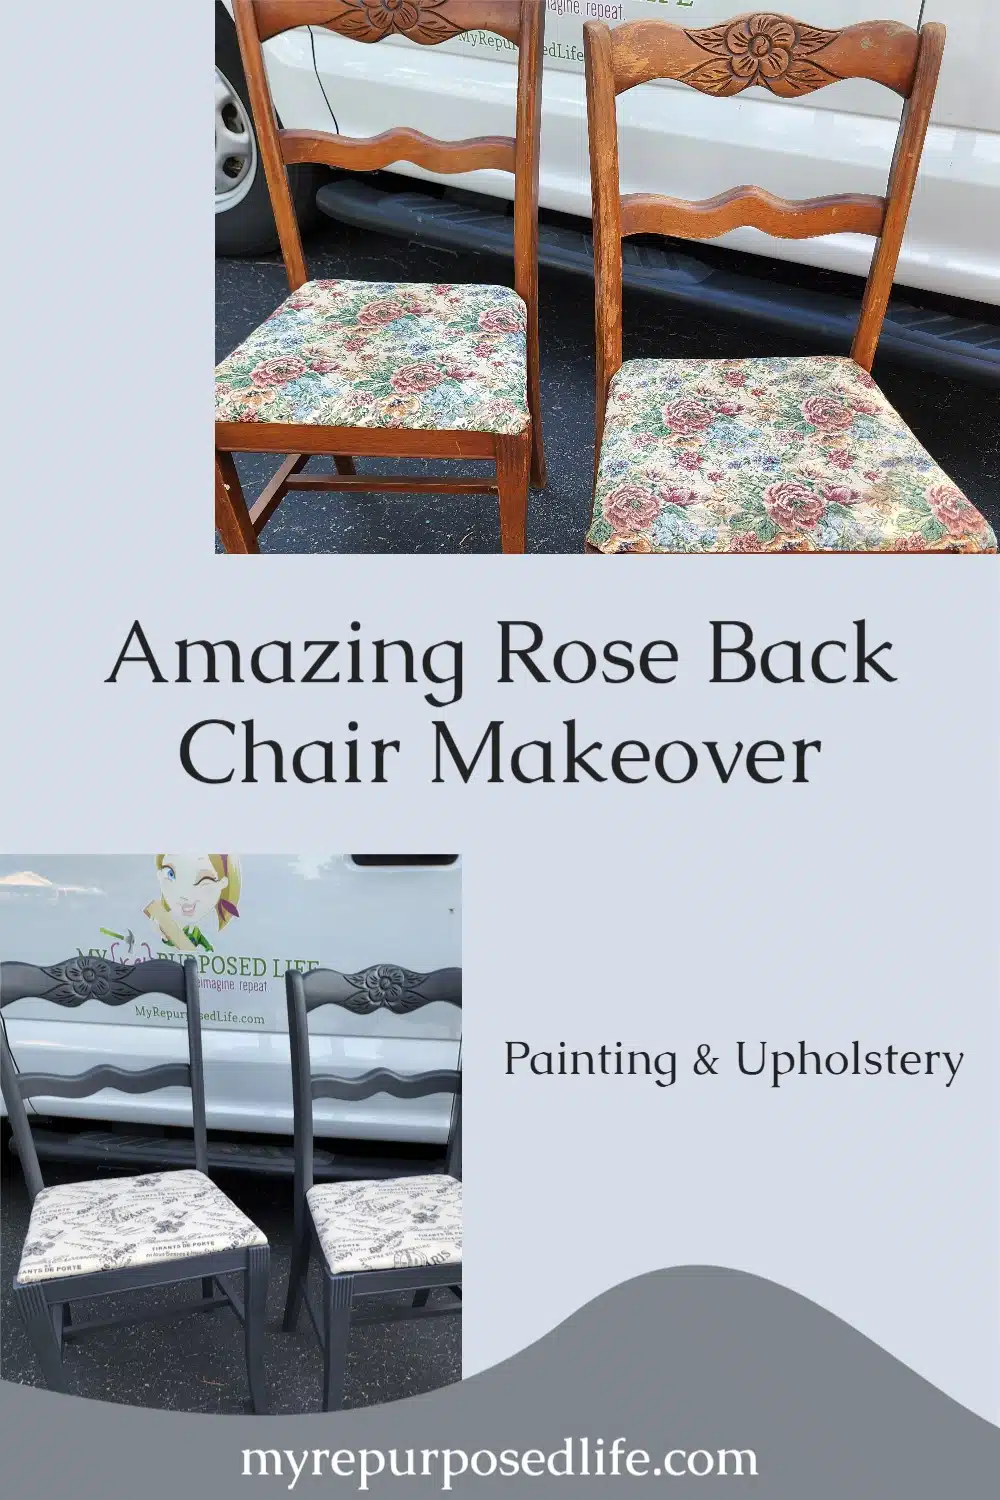 https://www.myrepurposedlife.com/wp-content/uploads/2022/09/Amazing-Rose-Back-Chair-Makeover-2.jpg.webp